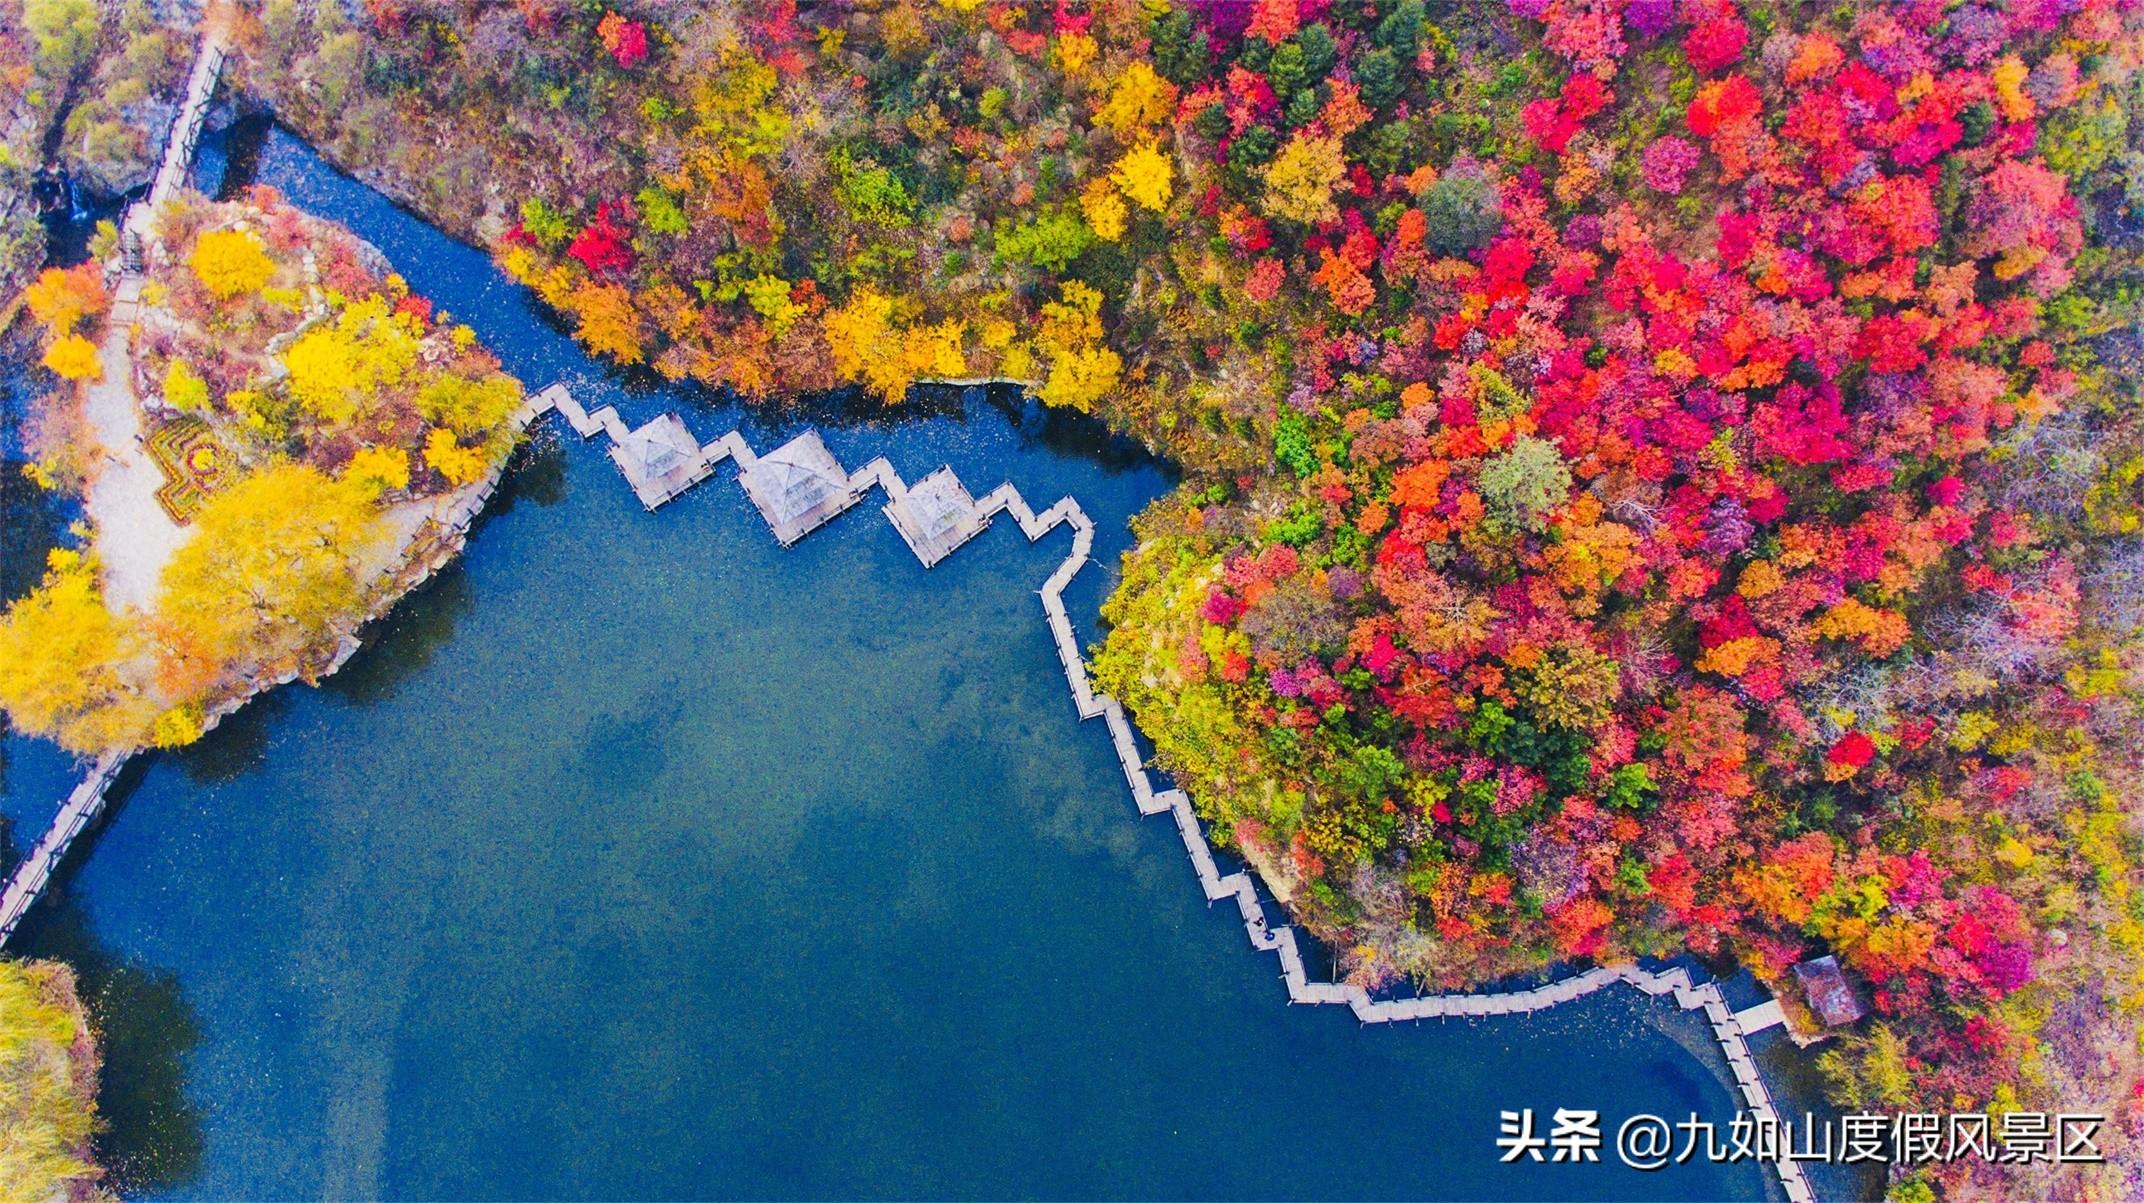 色彩斑斓迷人眼！盘点中国10大赏秋胜地，看一眼就想要即刻出发